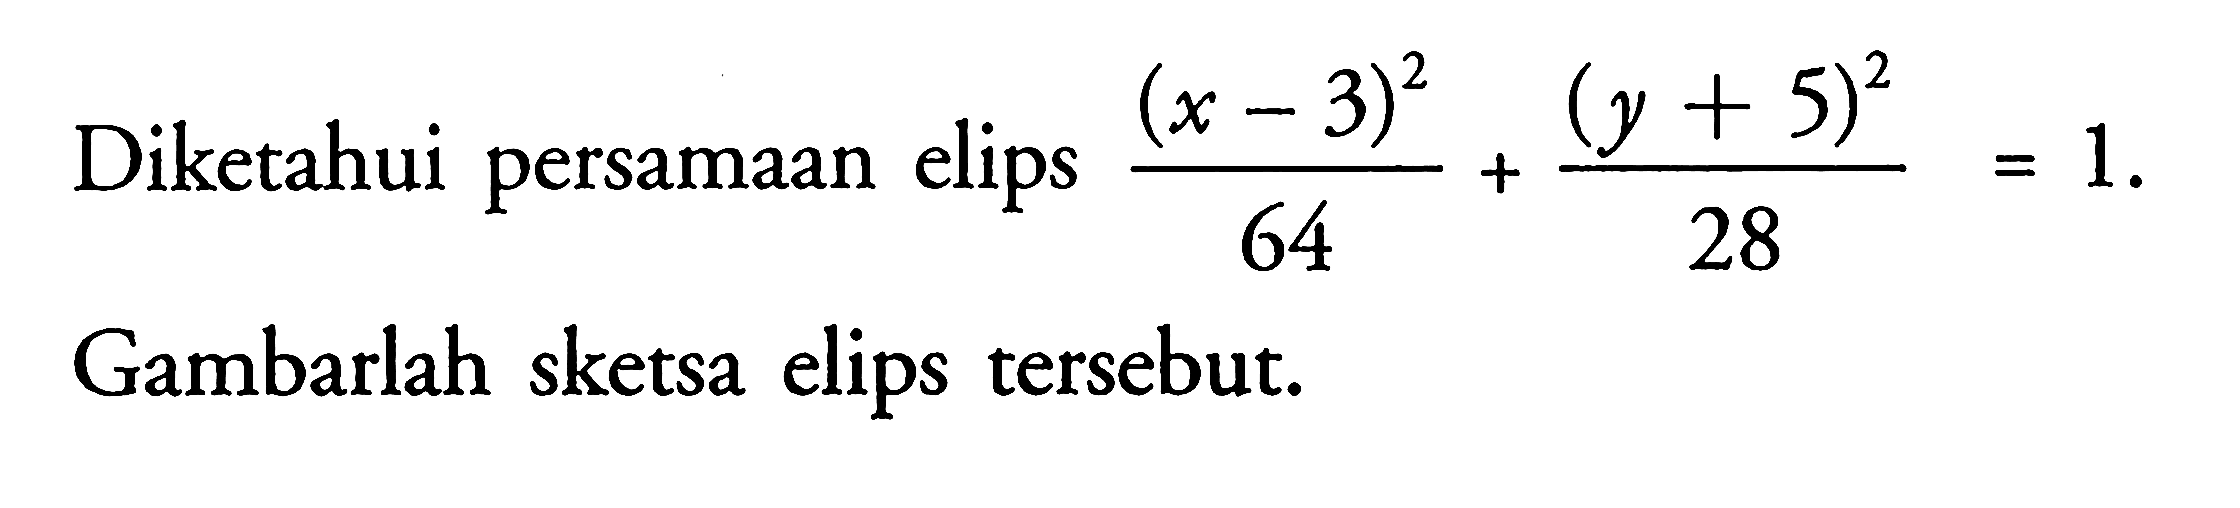 Diketahuai persamaan elips ((x-3)^2)/64+((y+5)^2)/28=1. Gambarlah sketsa elips tersebut.